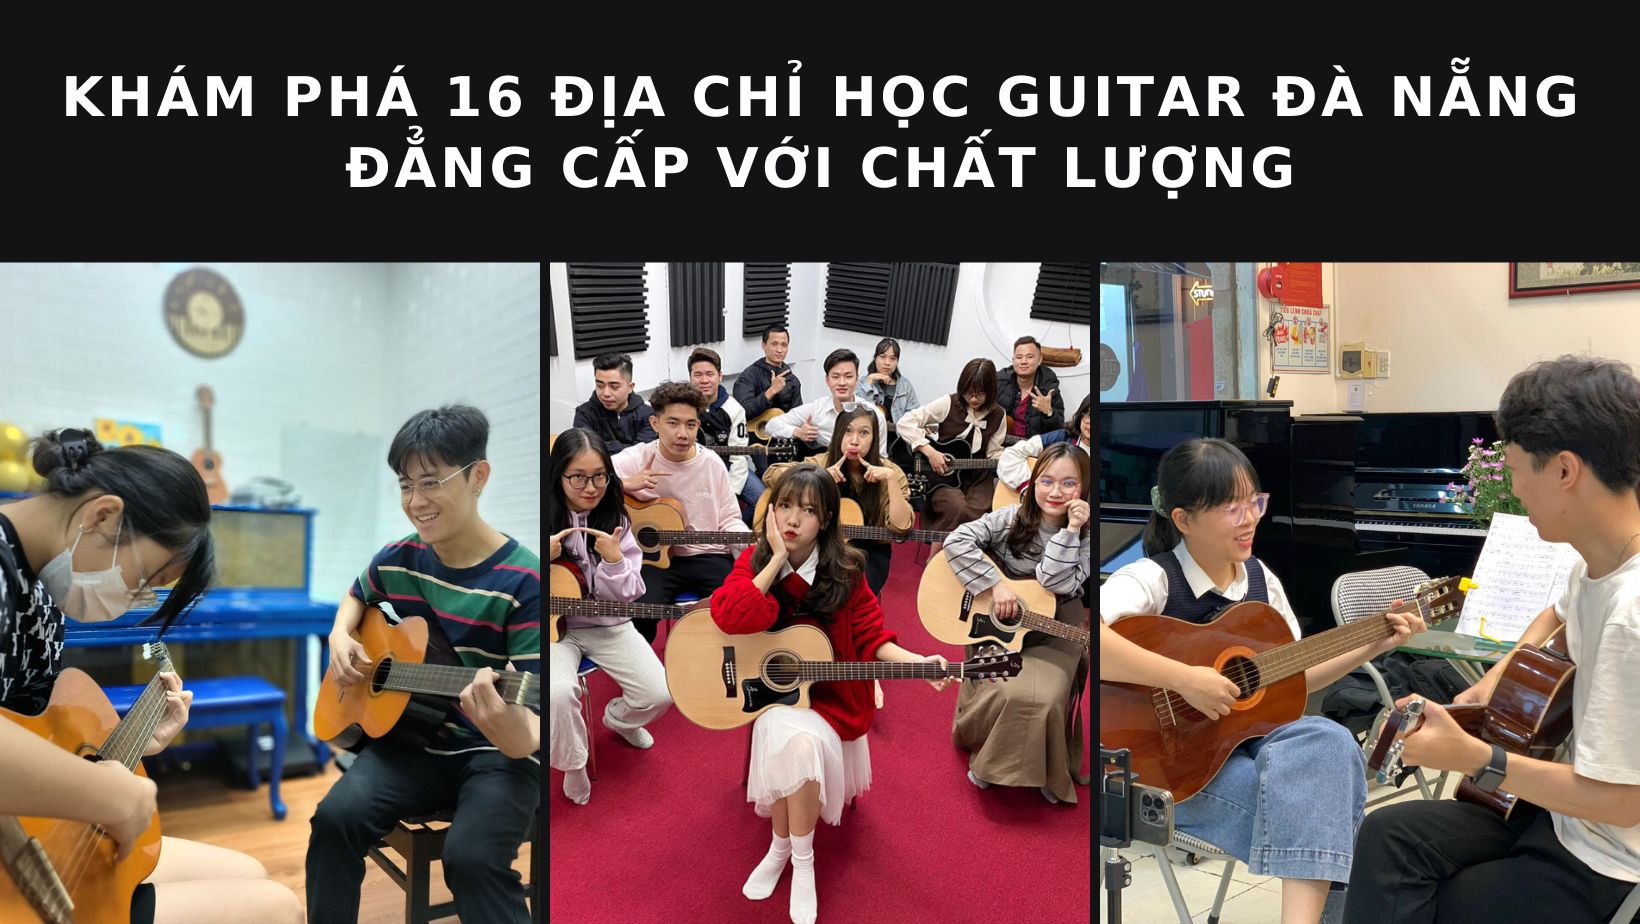 Top 16 địa chỉ học guitar Đà Nẵng: Trải nghiệm âm nhạc đỉnh cao